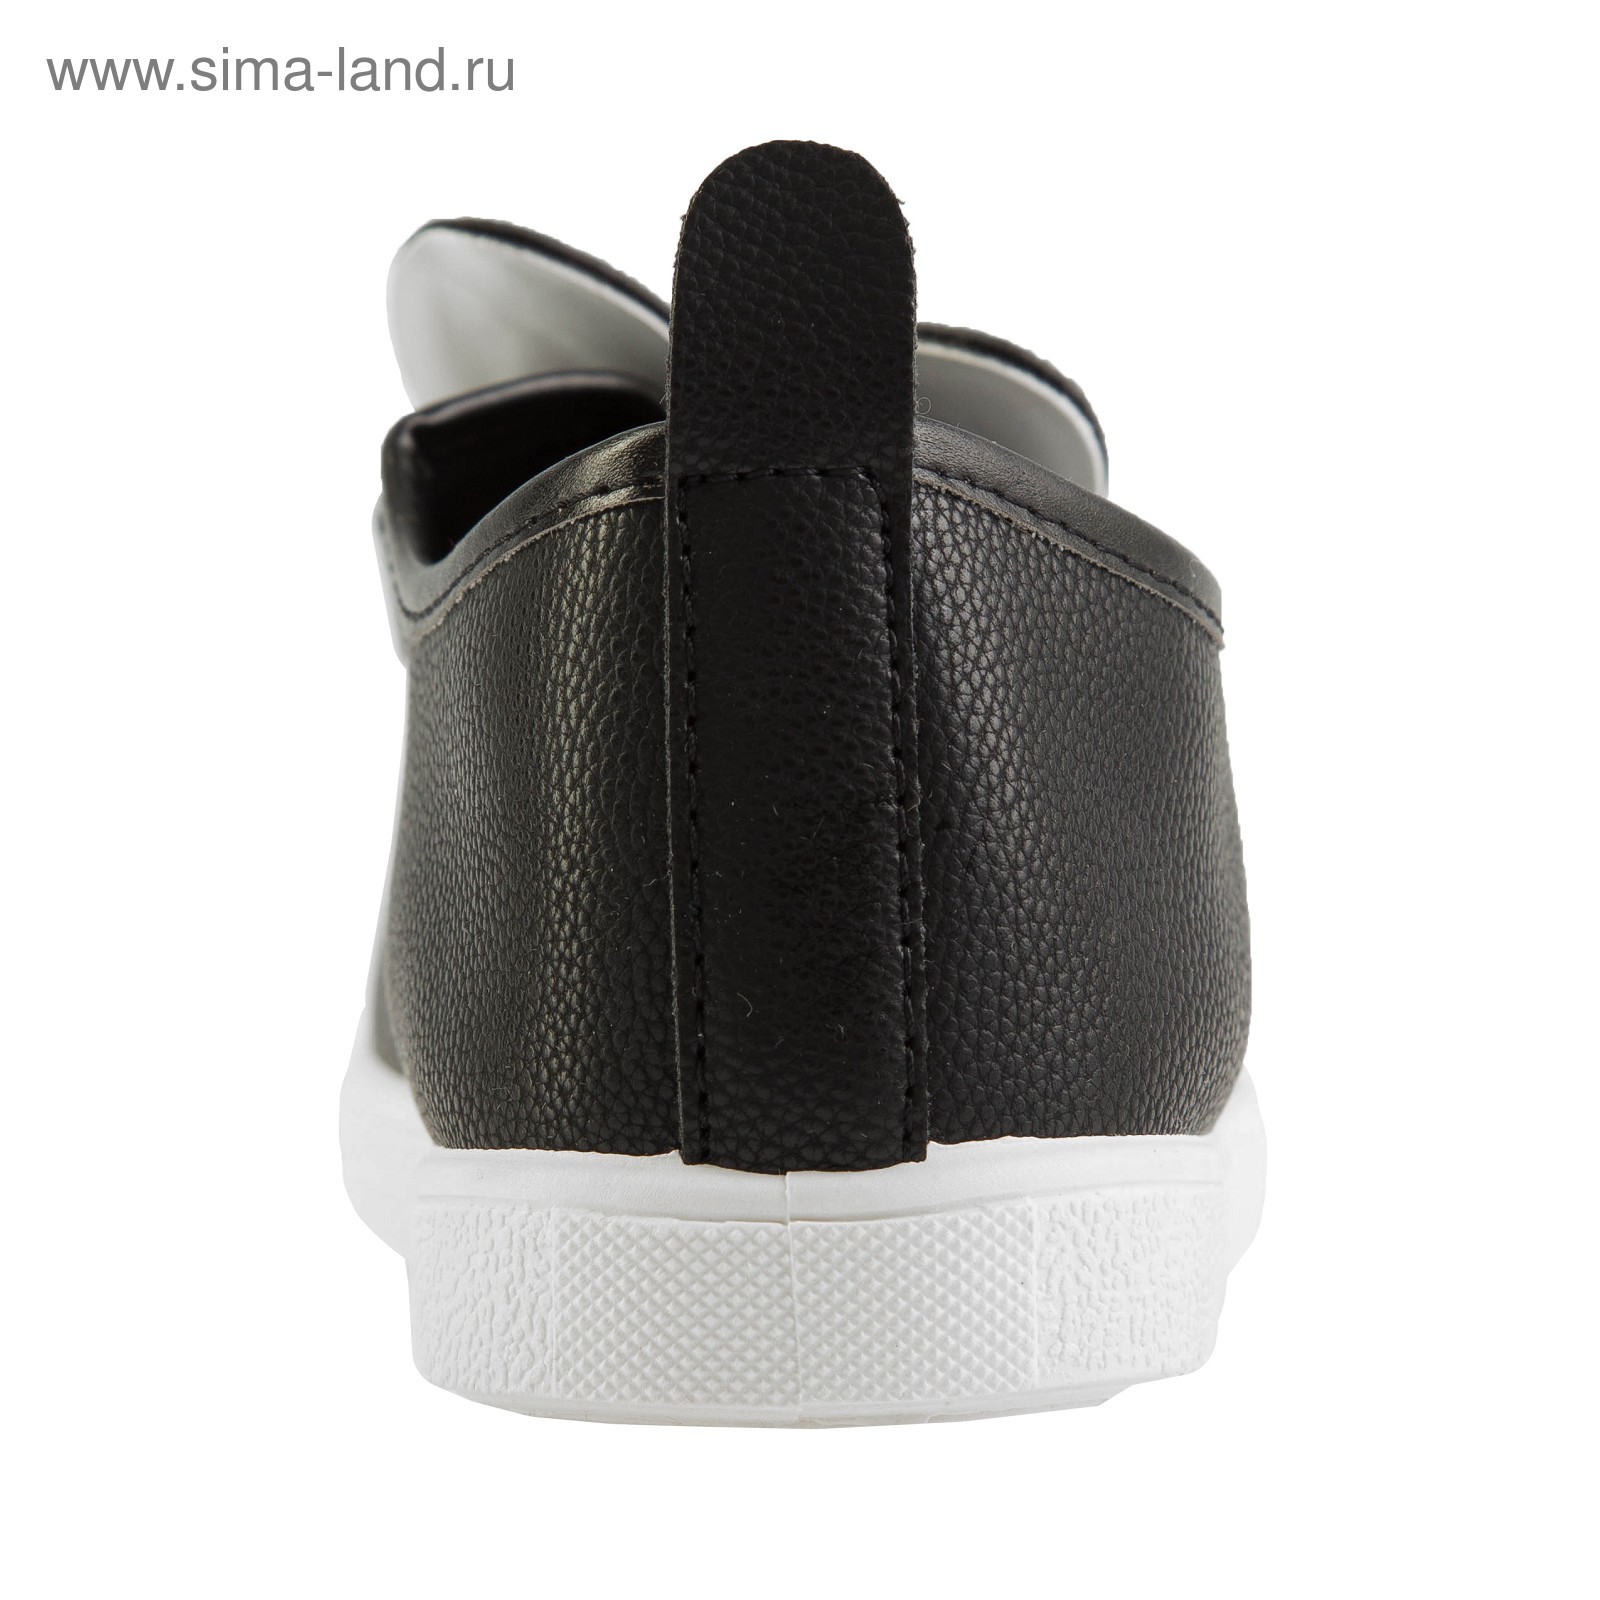 Ботинки женские OLADI арт. A8891 (черный) (р. 36)